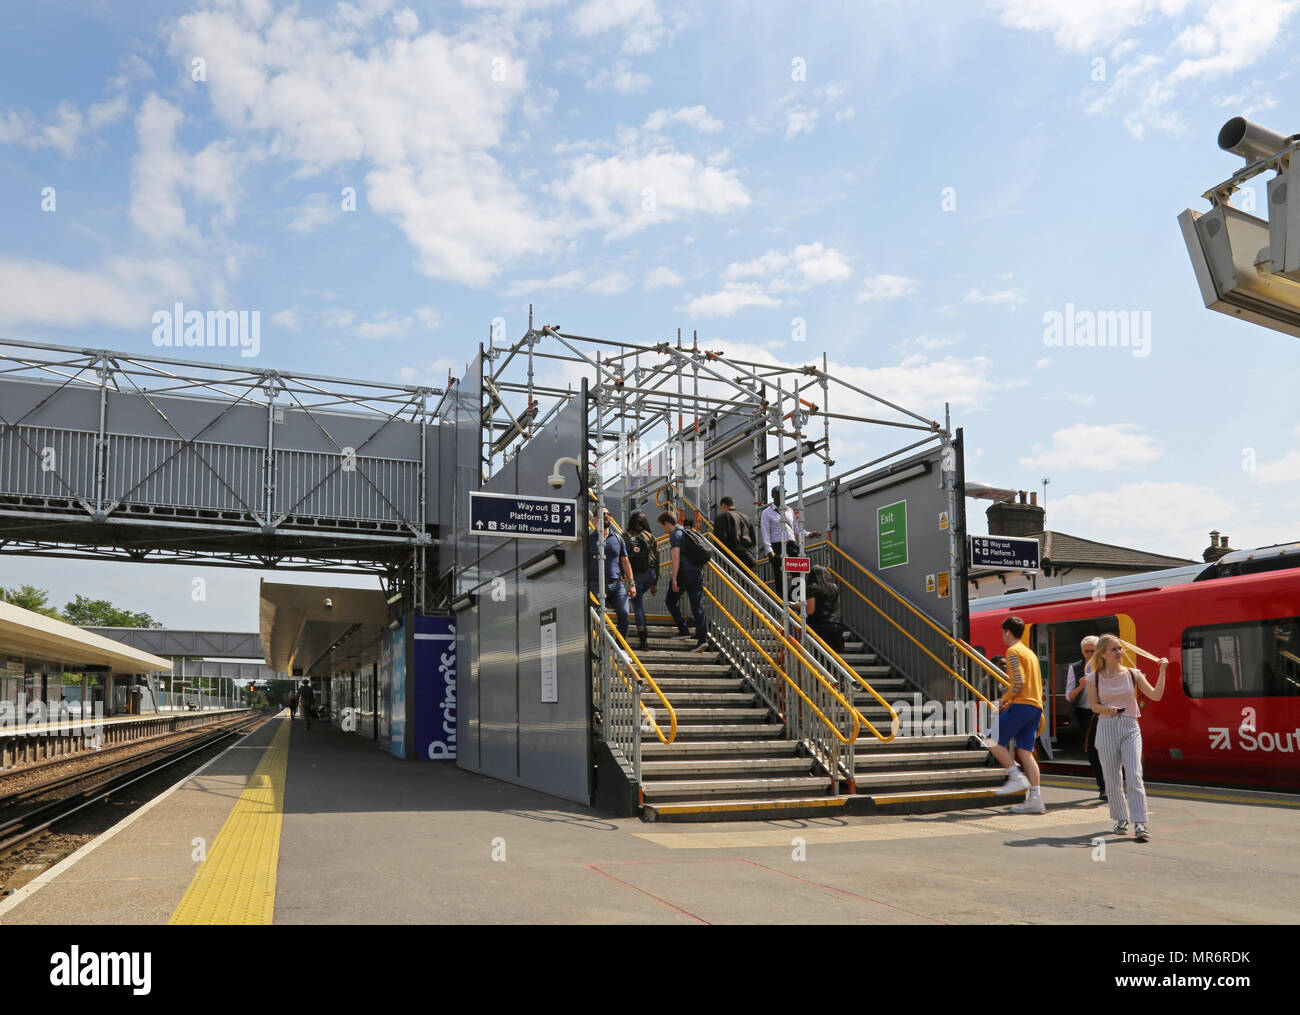 Eine temporäre Fußgängerbrücke bietet Zugriff zwischen den Plattformen in Twickenham Bahnhof in West London, Großbritannien Stockfoto